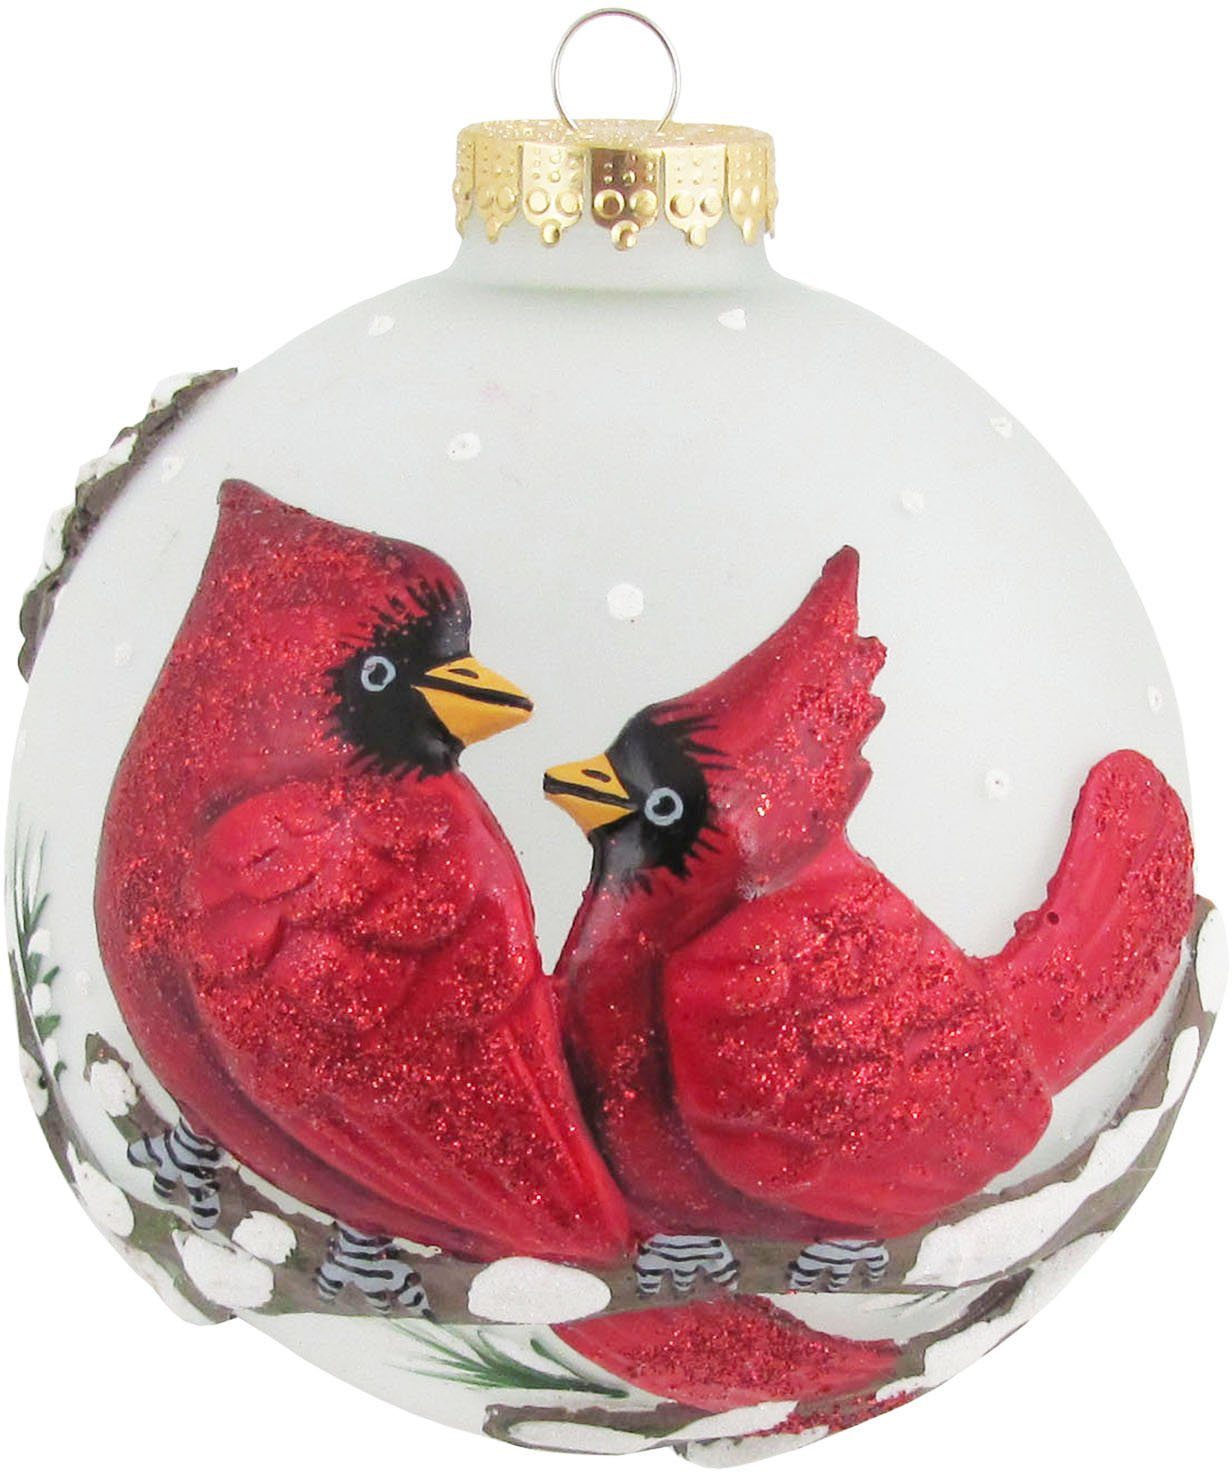 [Hohe Qualität, niedriger Preis] Krebs Glas Glas 3D Vogel Weihnachtsdeko, mit Weihnachtsbaumkugel CBK30412, (1 Christbaumkugeln Lauscha Christbaumschmuck, St)